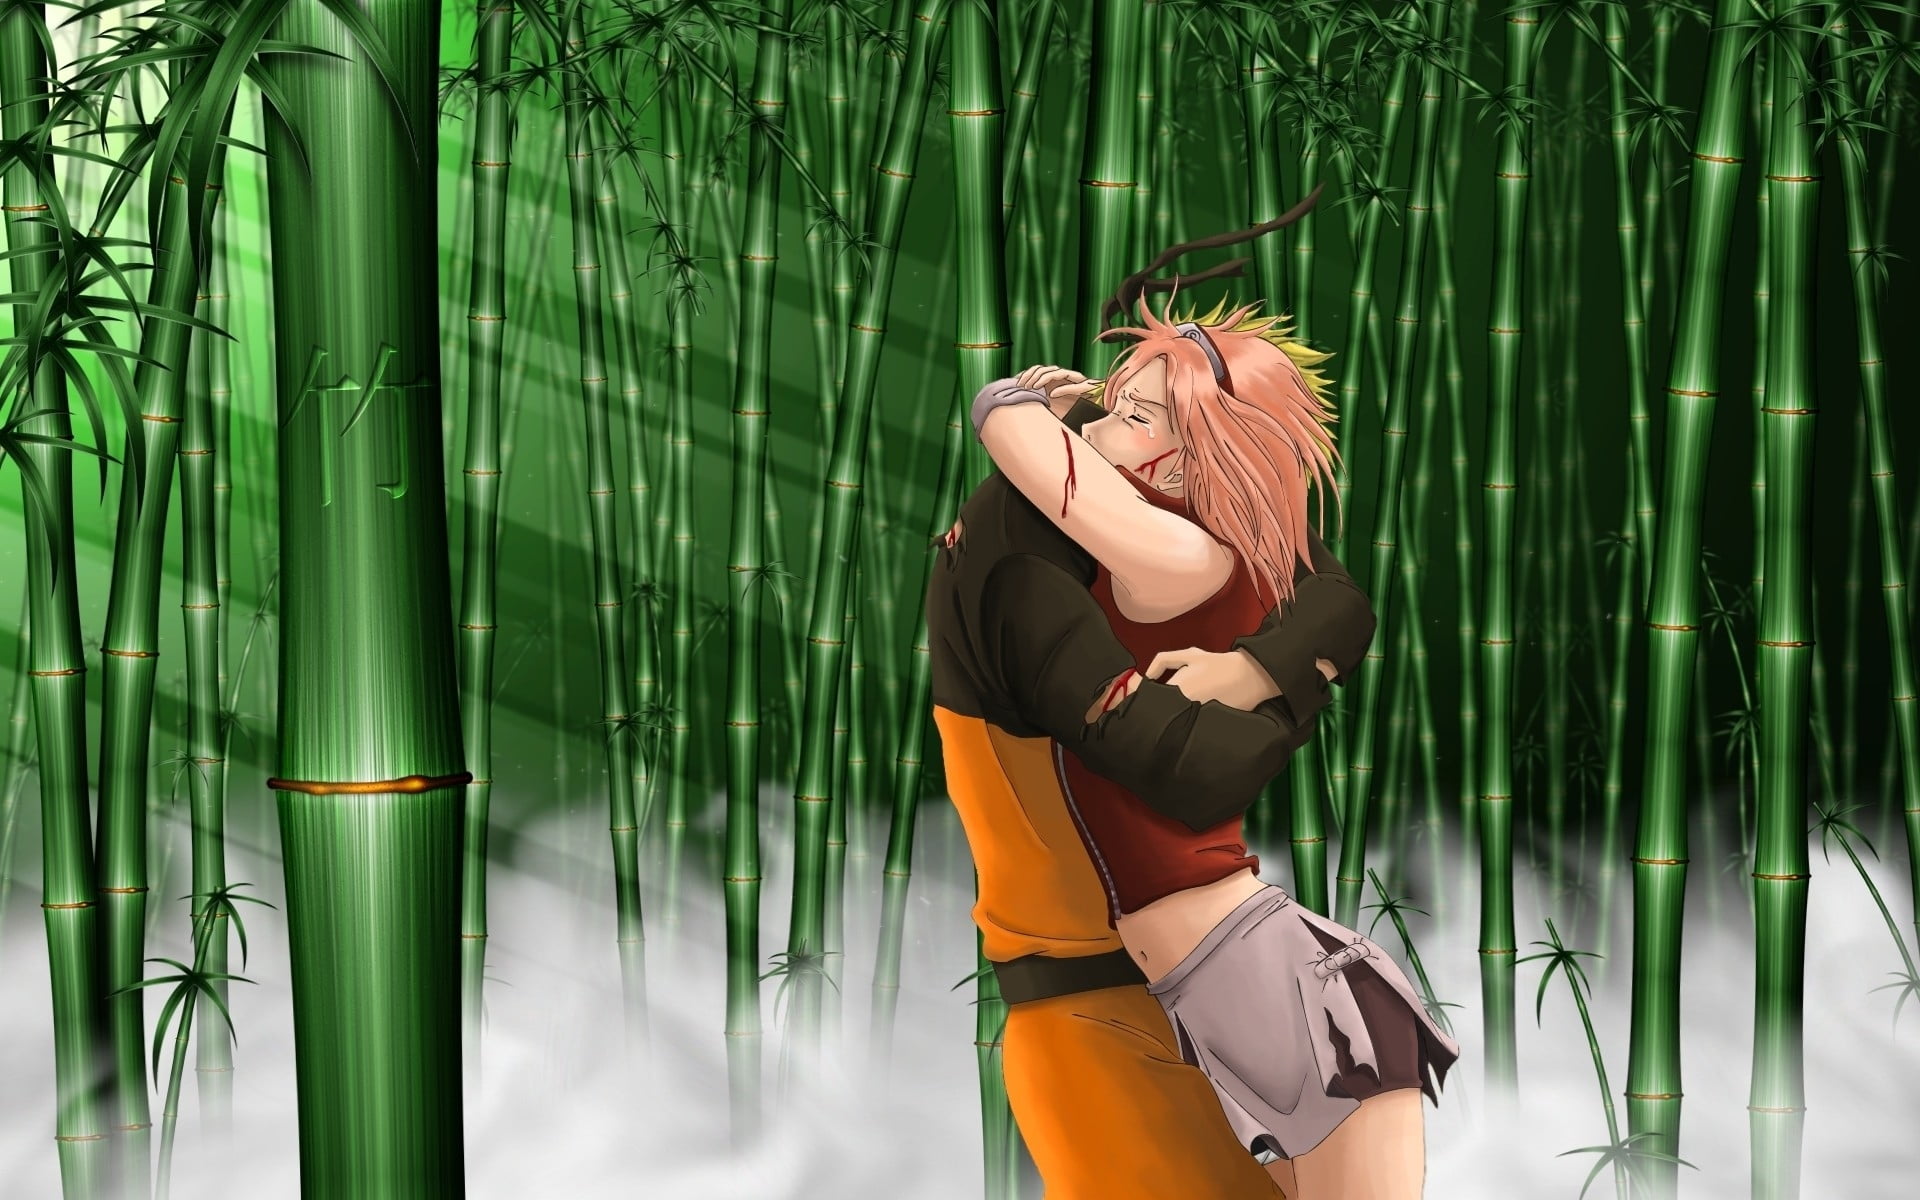 Sakura hugging Naruto at bamboo forest